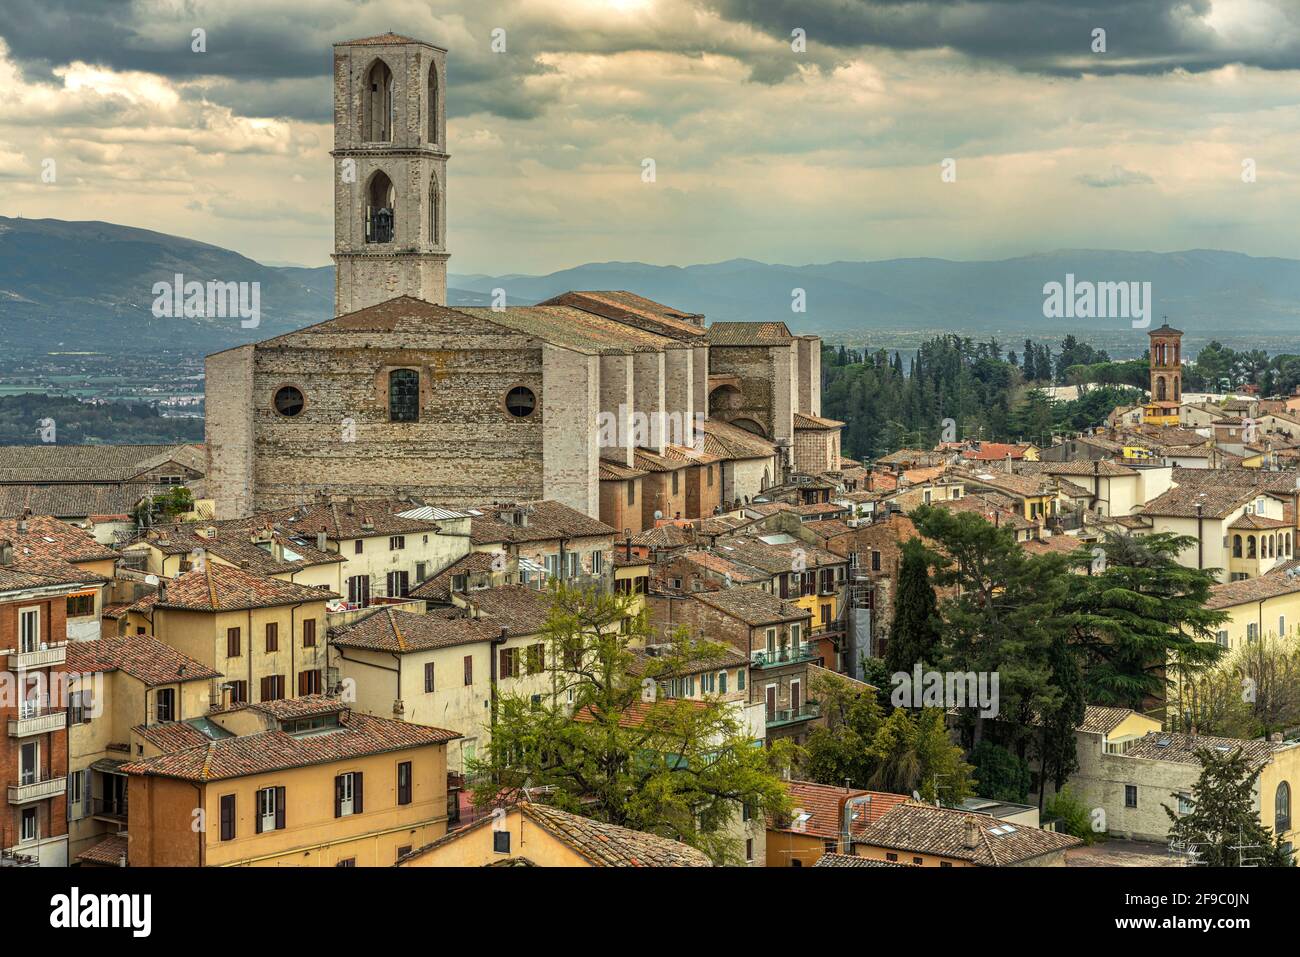 Stadtlandschaft der Stadt Perugia. Imposant ist das Kloster San Domenico mit seinem romanischen Glockenturm. Perugia, Umbrien, Italien, Europa Stockfoto